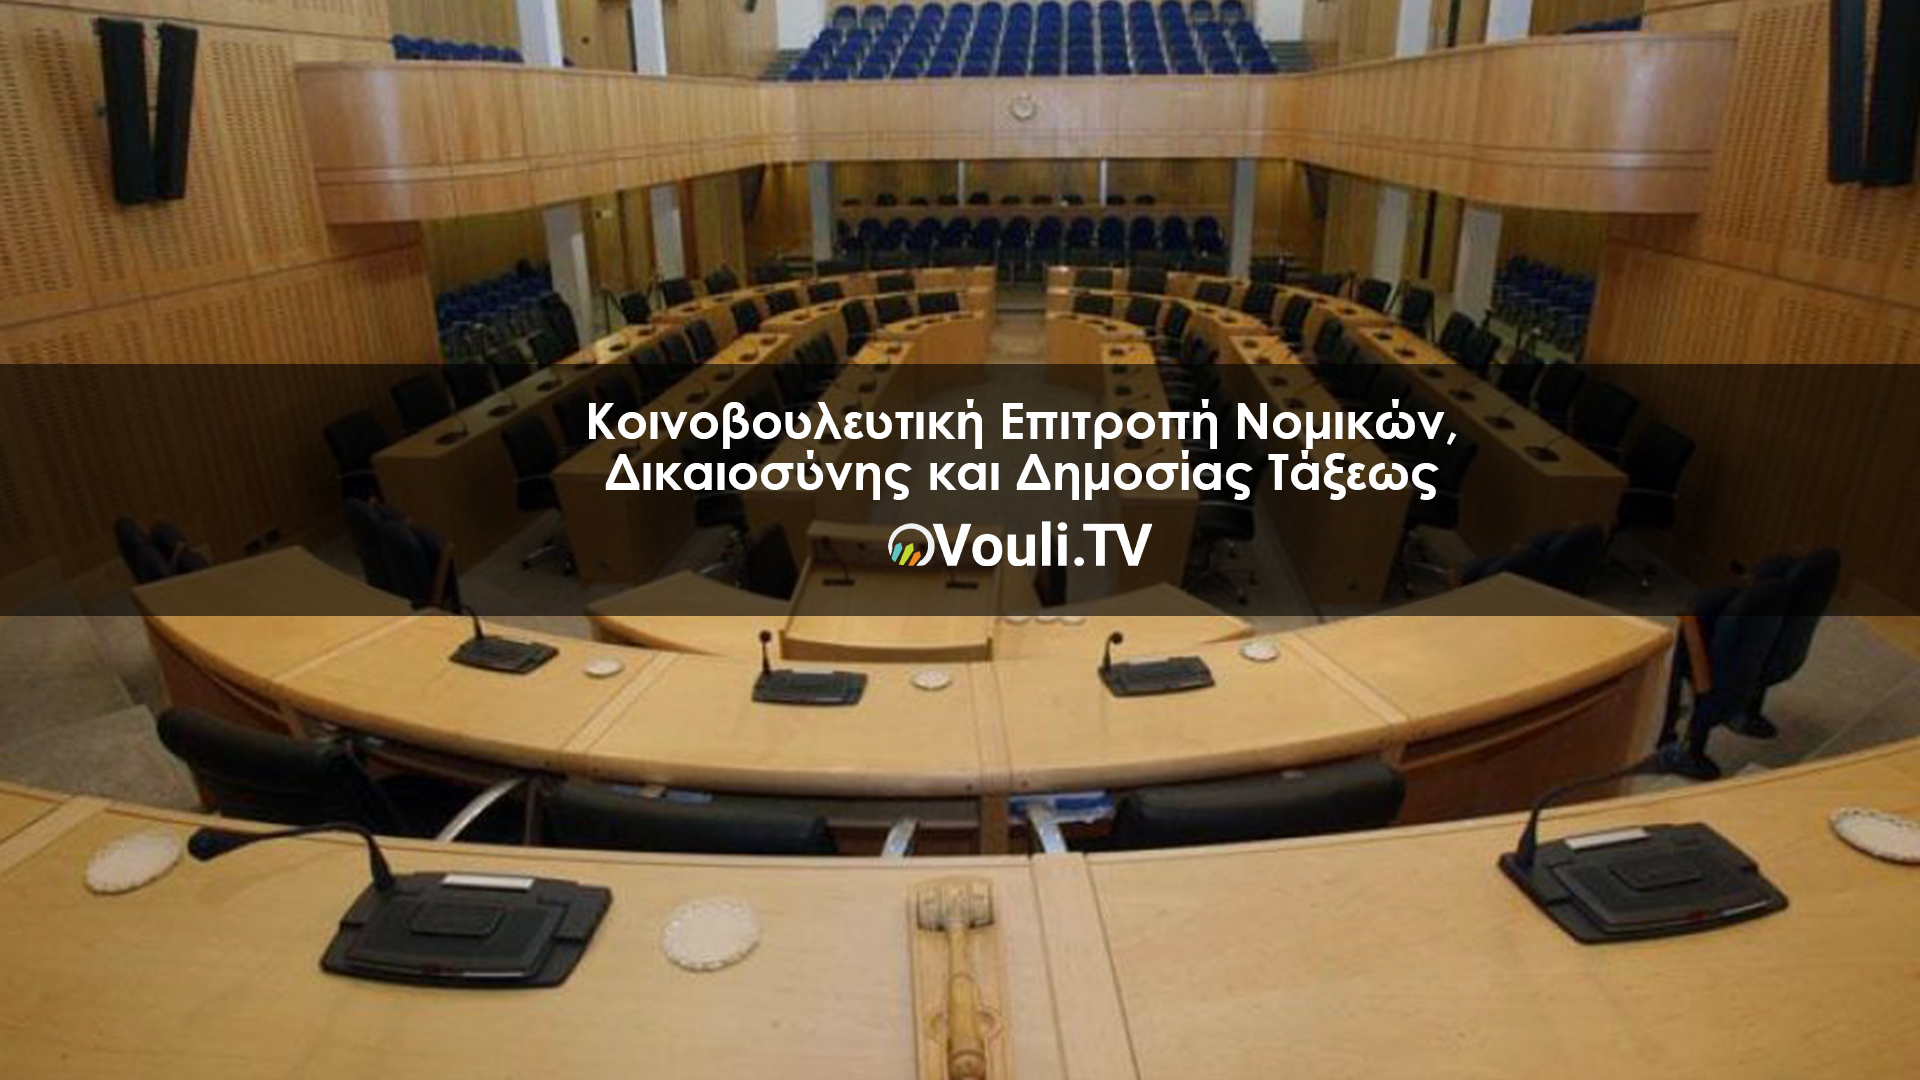 Κοινοβουλευτική Επιτροπή Νομικών, Δικαιοσύνης και Δημοσίας Τάξεως | Vouli report 05/10/2022